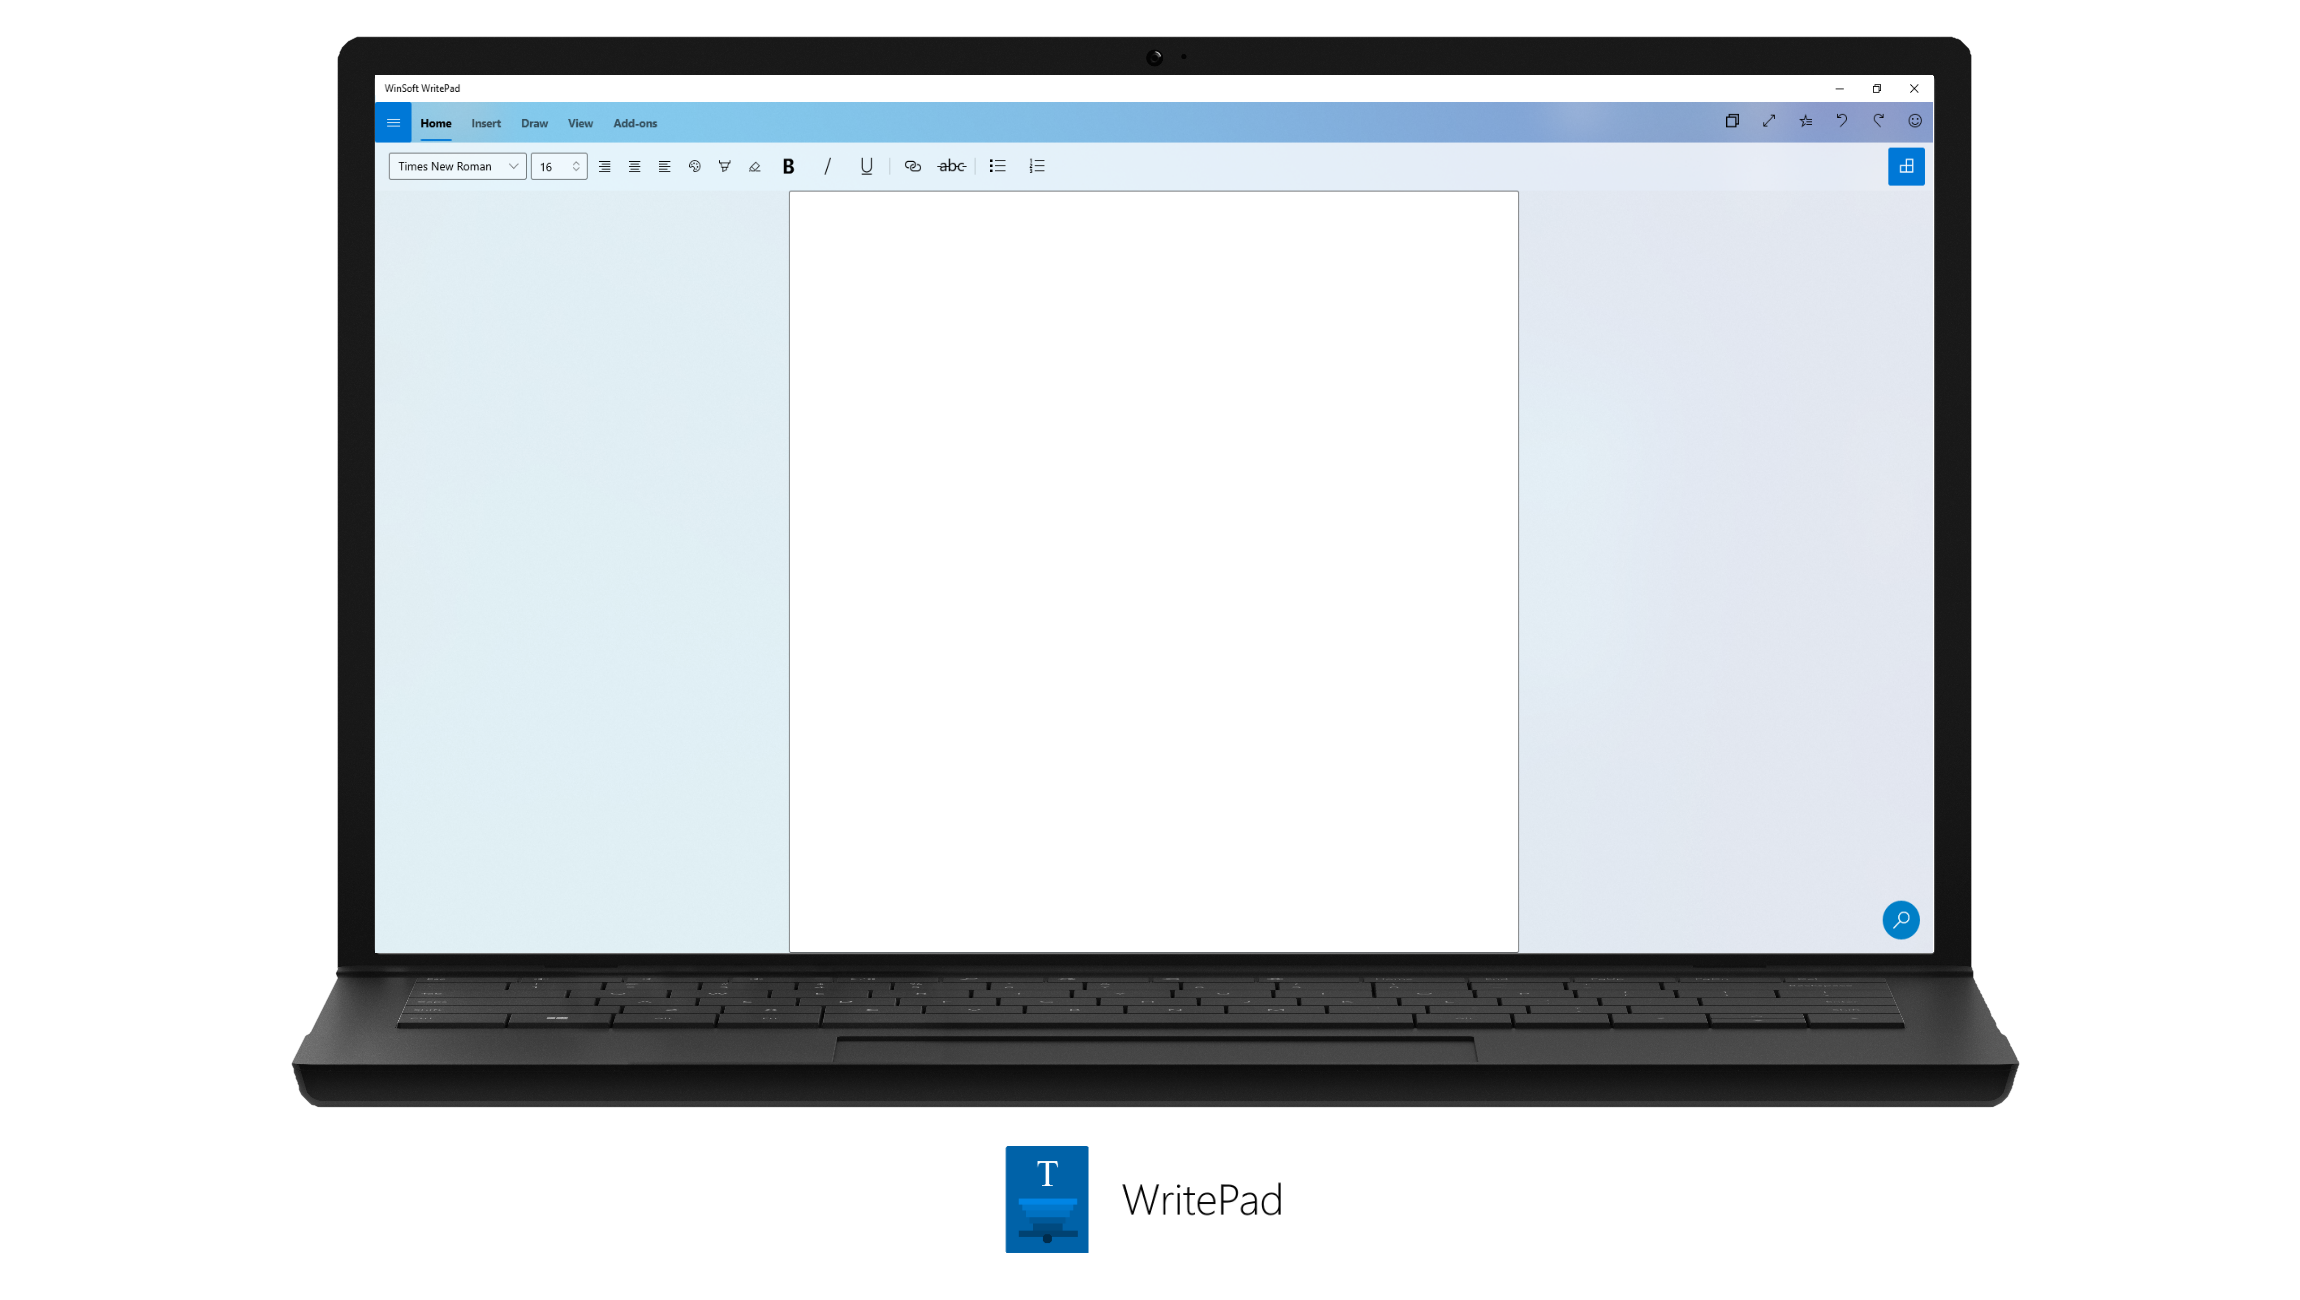 WinSoft WritePad